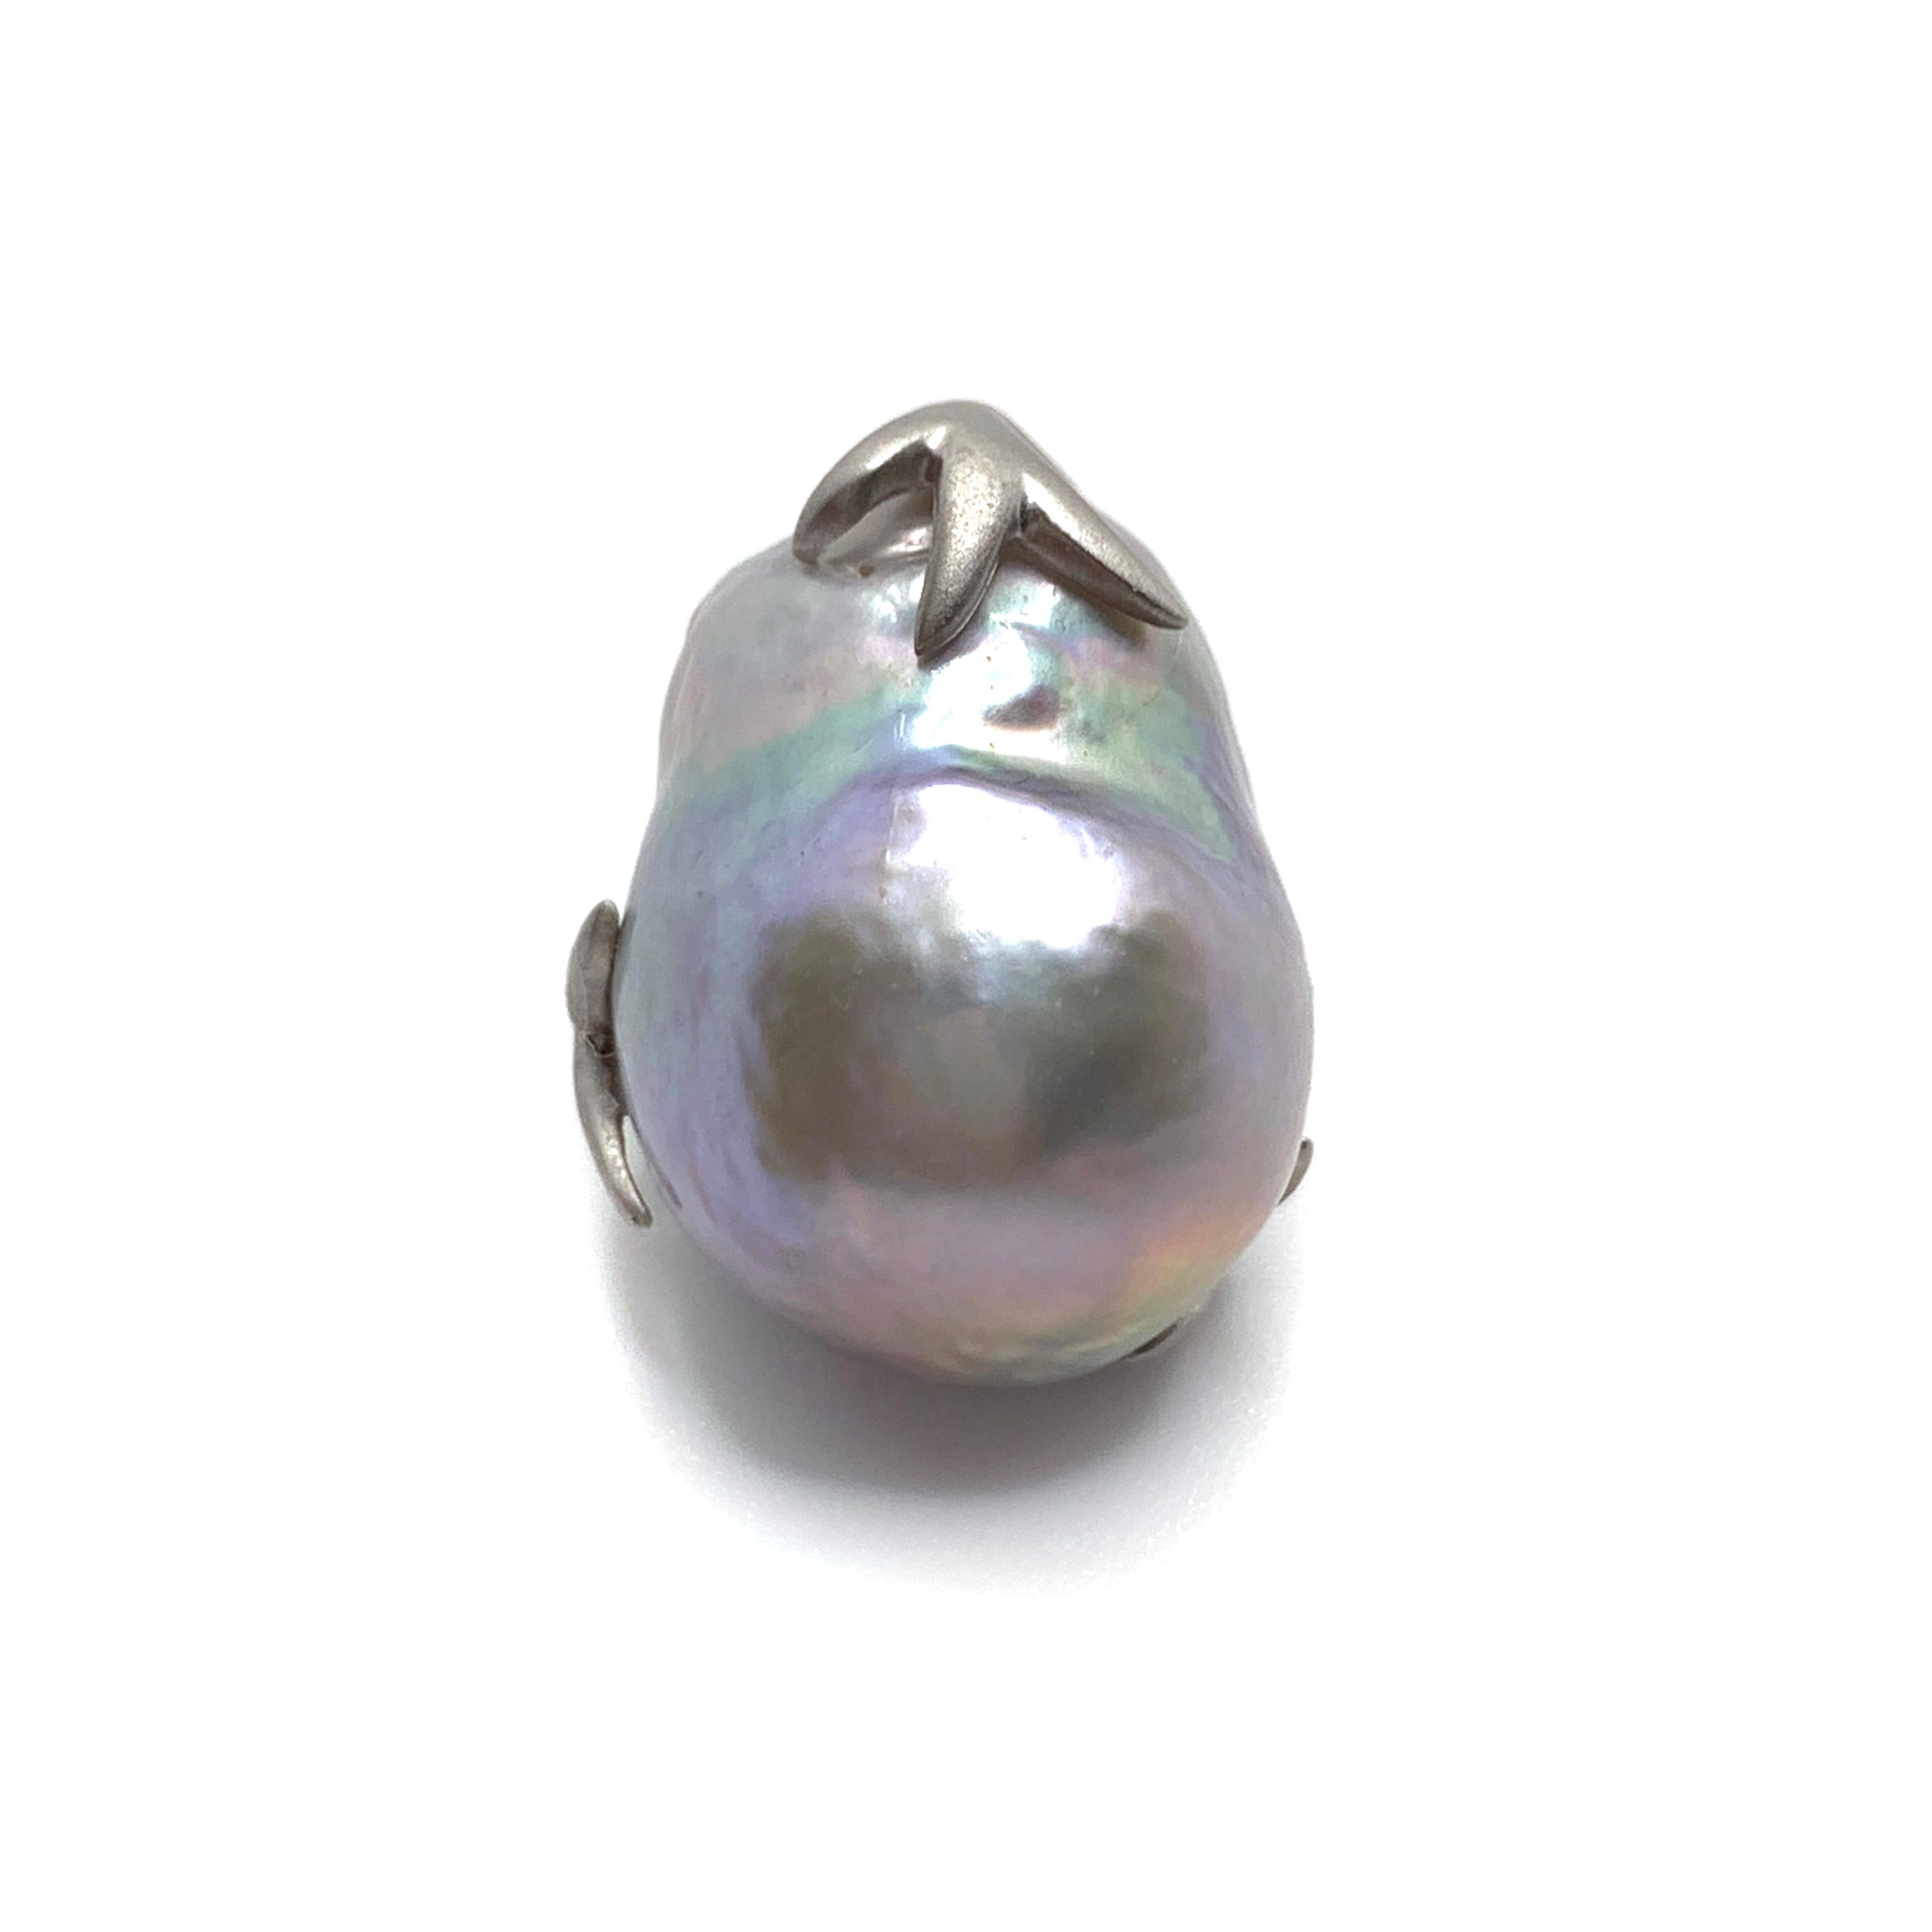 grey baroque pearl earrings